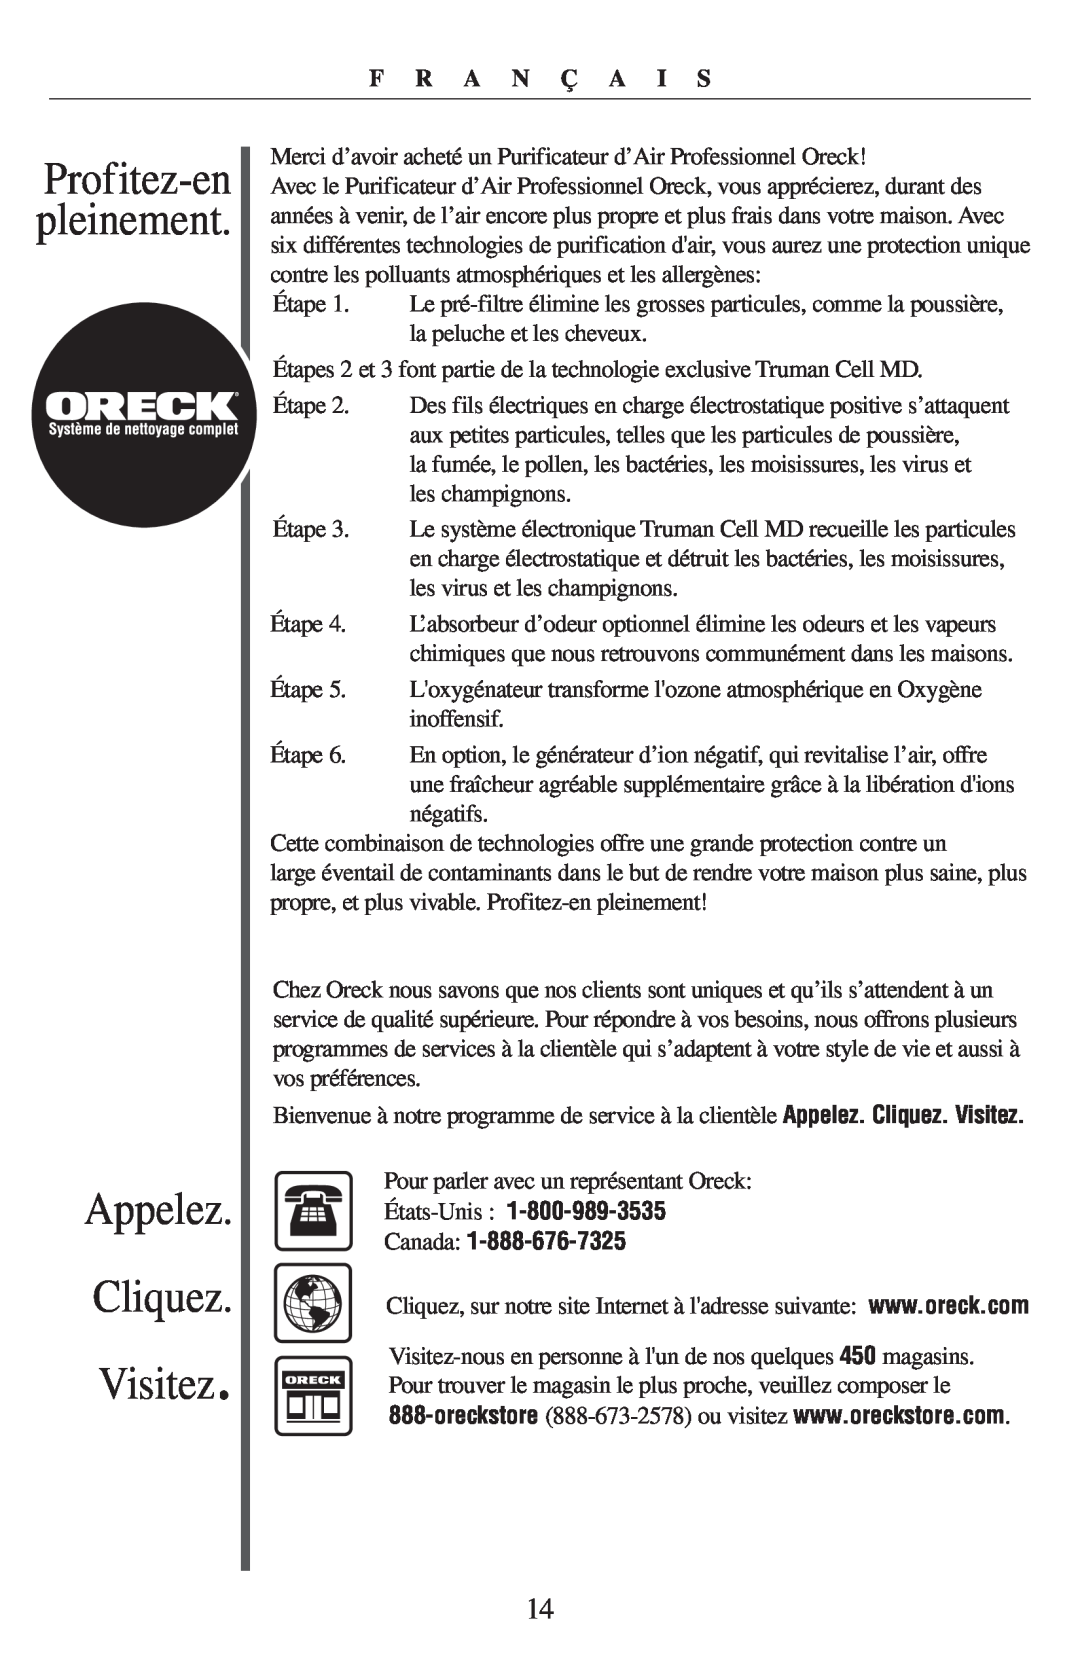 Oreck 21057-03 manual Appelez Cliquez Visitez, Profitez-enpleinement, F R A N Ç A I S 